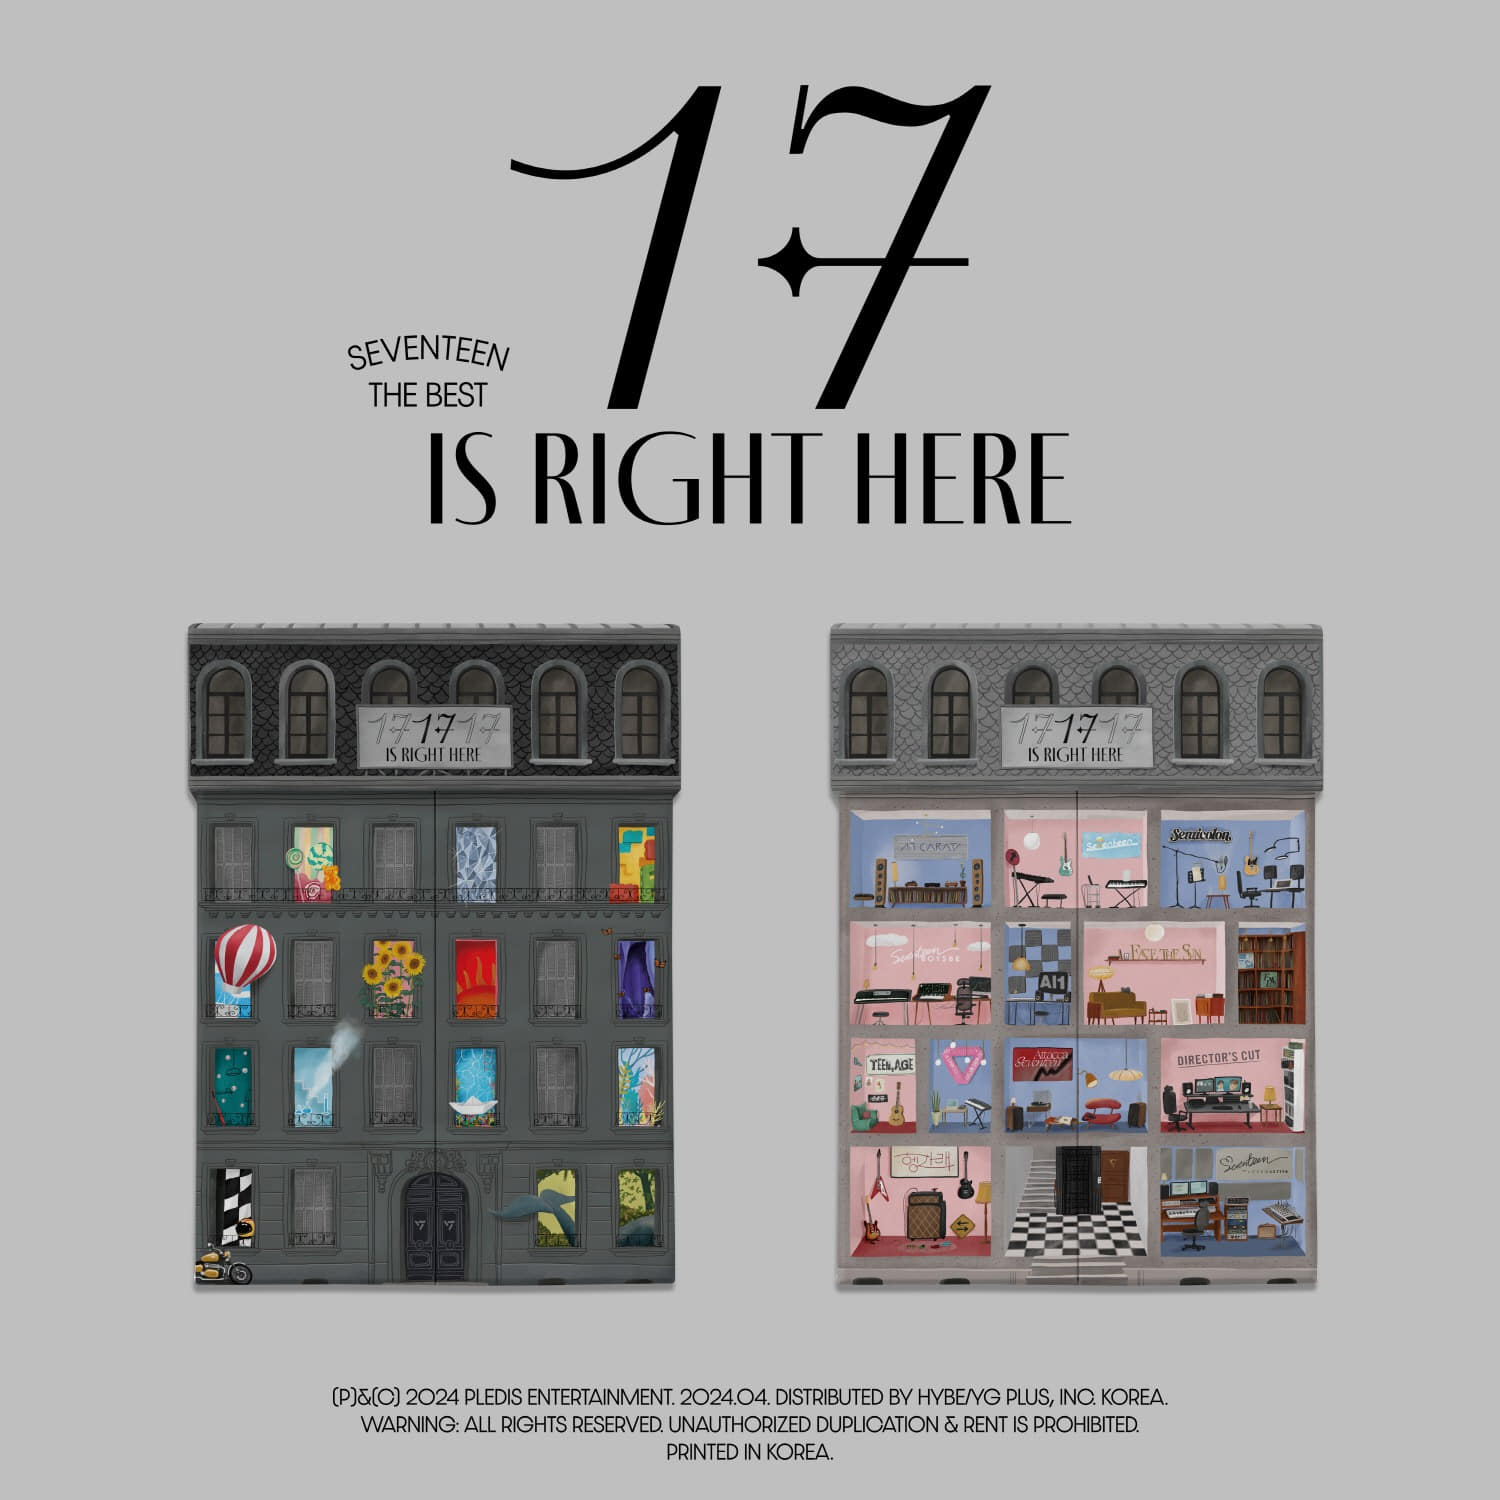 세븐틴 (SEVENTEEN) - SEVENTEEN BEST ALBUM [17 IS RIGHT HERE] (세트)